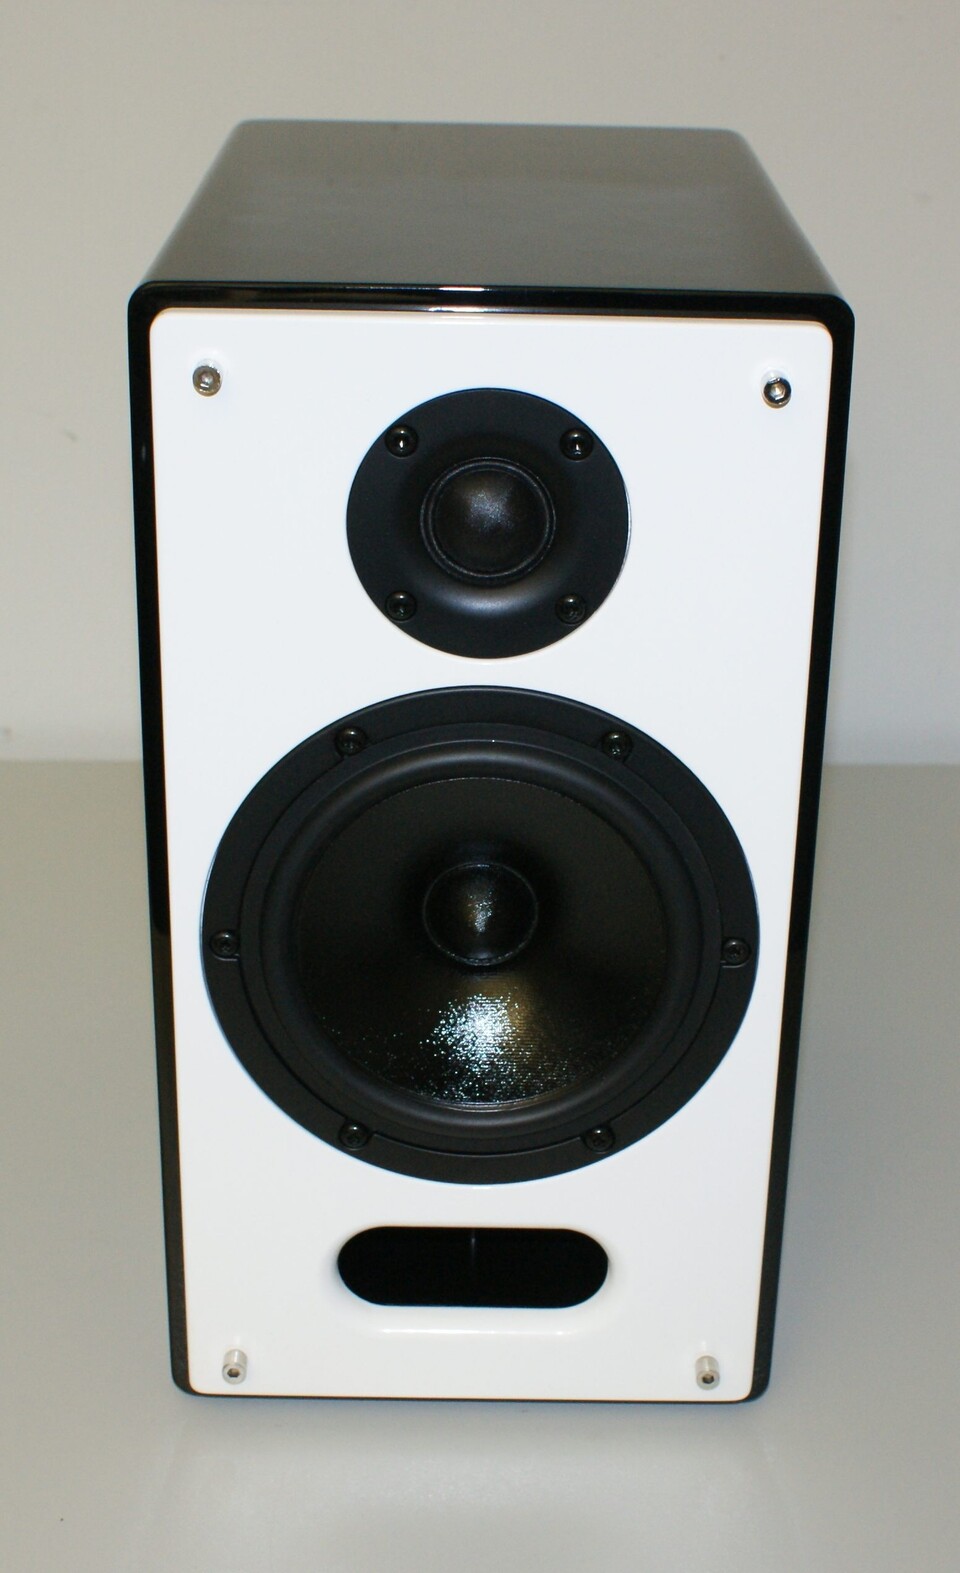 Vor allem bei Musik klingen die 2-Wege-Lautsprecher sehr authentisch und präsent.